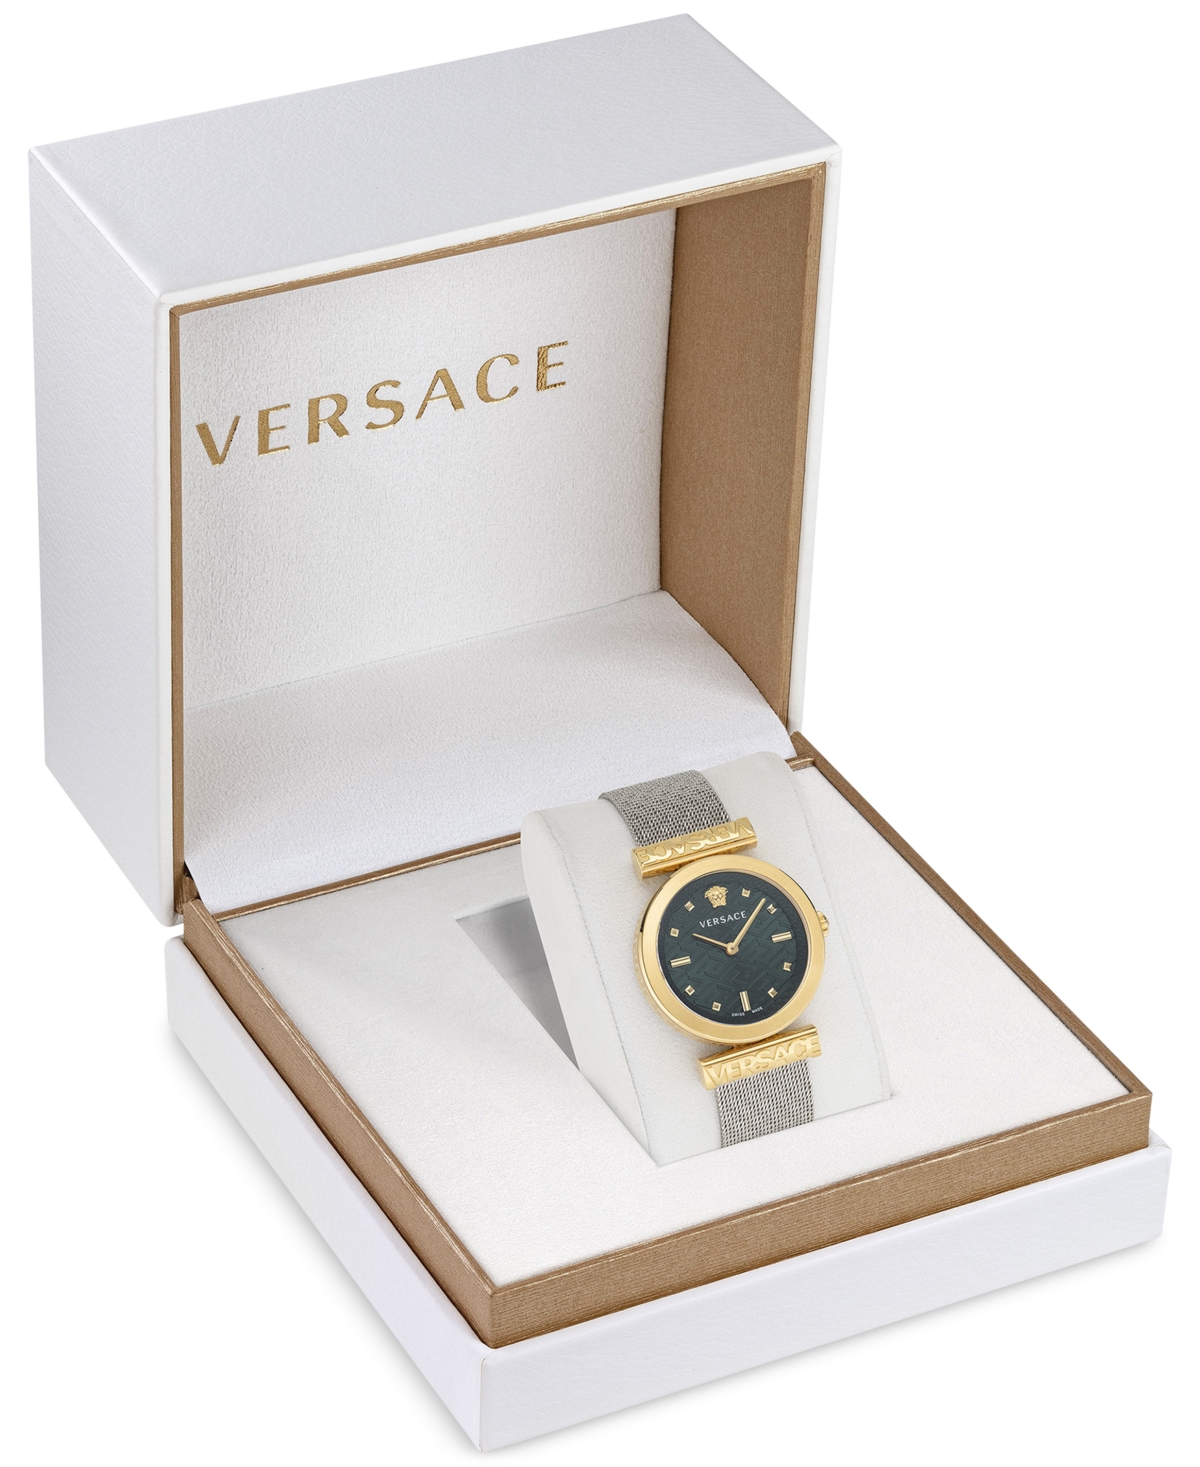 Shop Versace Women's Swiss Regalia Stainless Steel Mesh Bracelet Watch 34mm In Two Tone